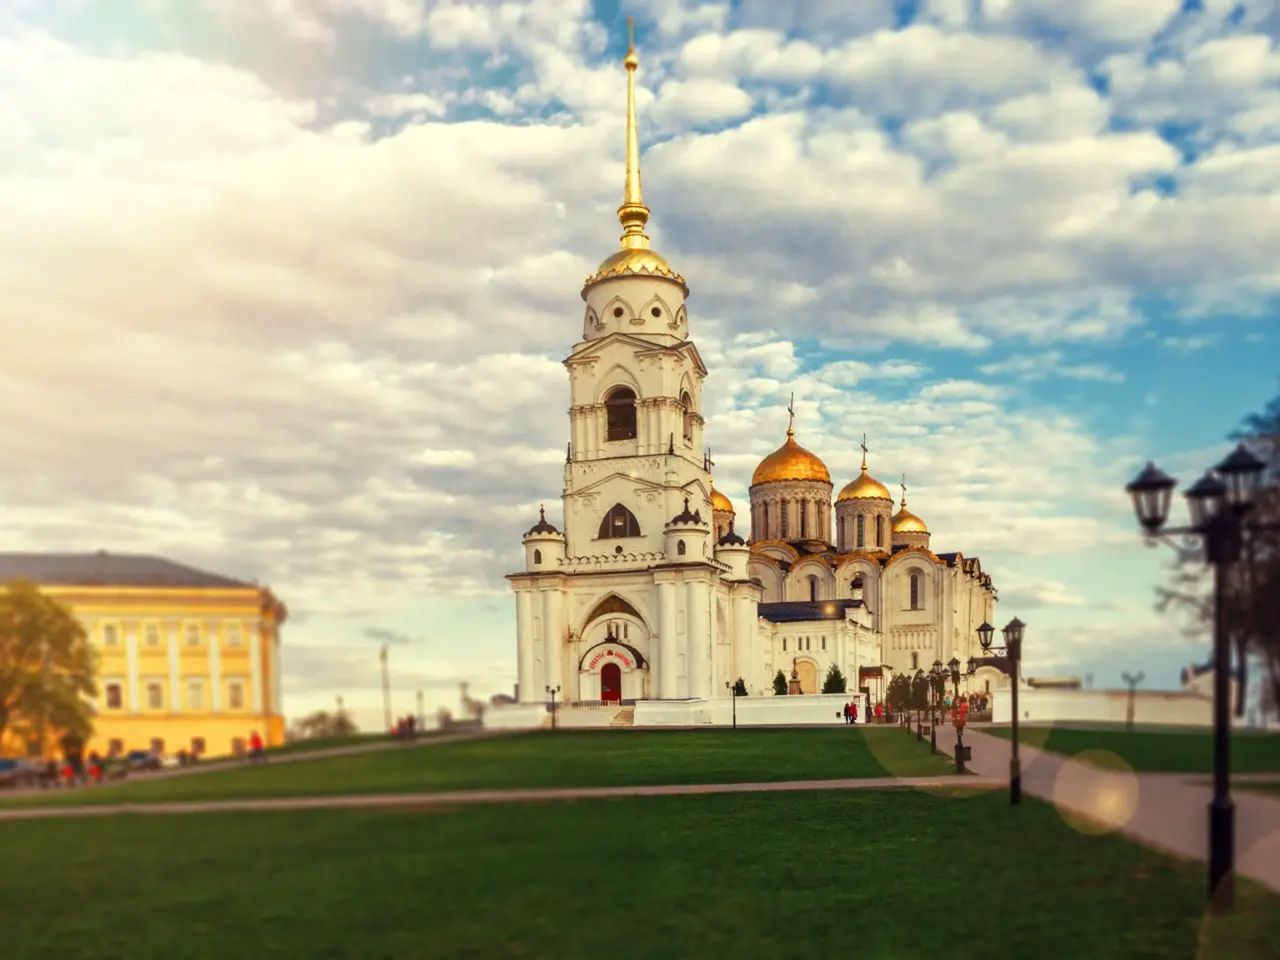 Владимир – уютный город с древнейшей историей | Цена 4300₽, отзывы, описание экскурсии